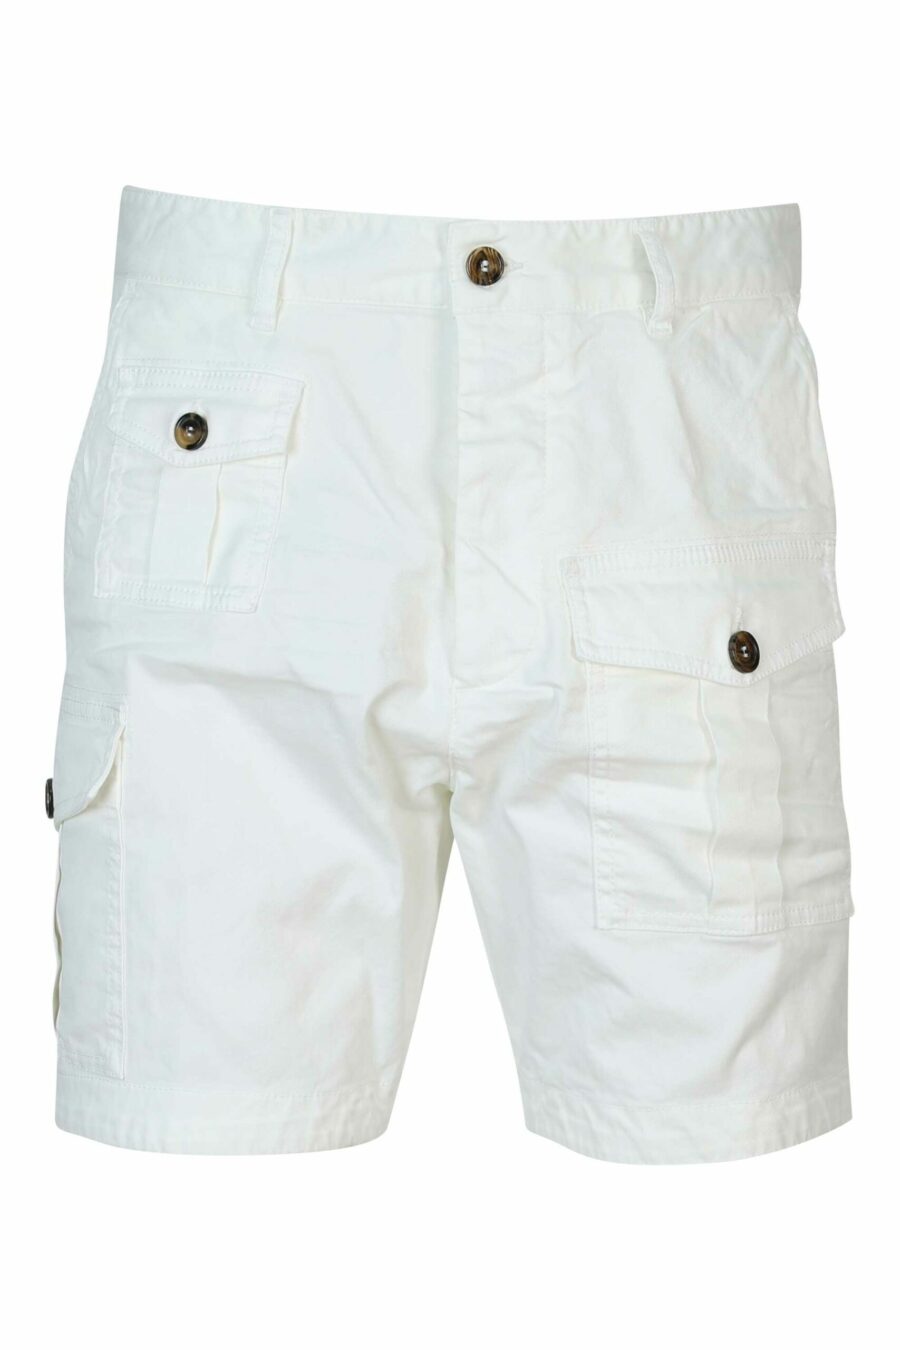 Weiße Denim-Shorts "sexy Cargo-Shorts" - 8052134622513 skaliert